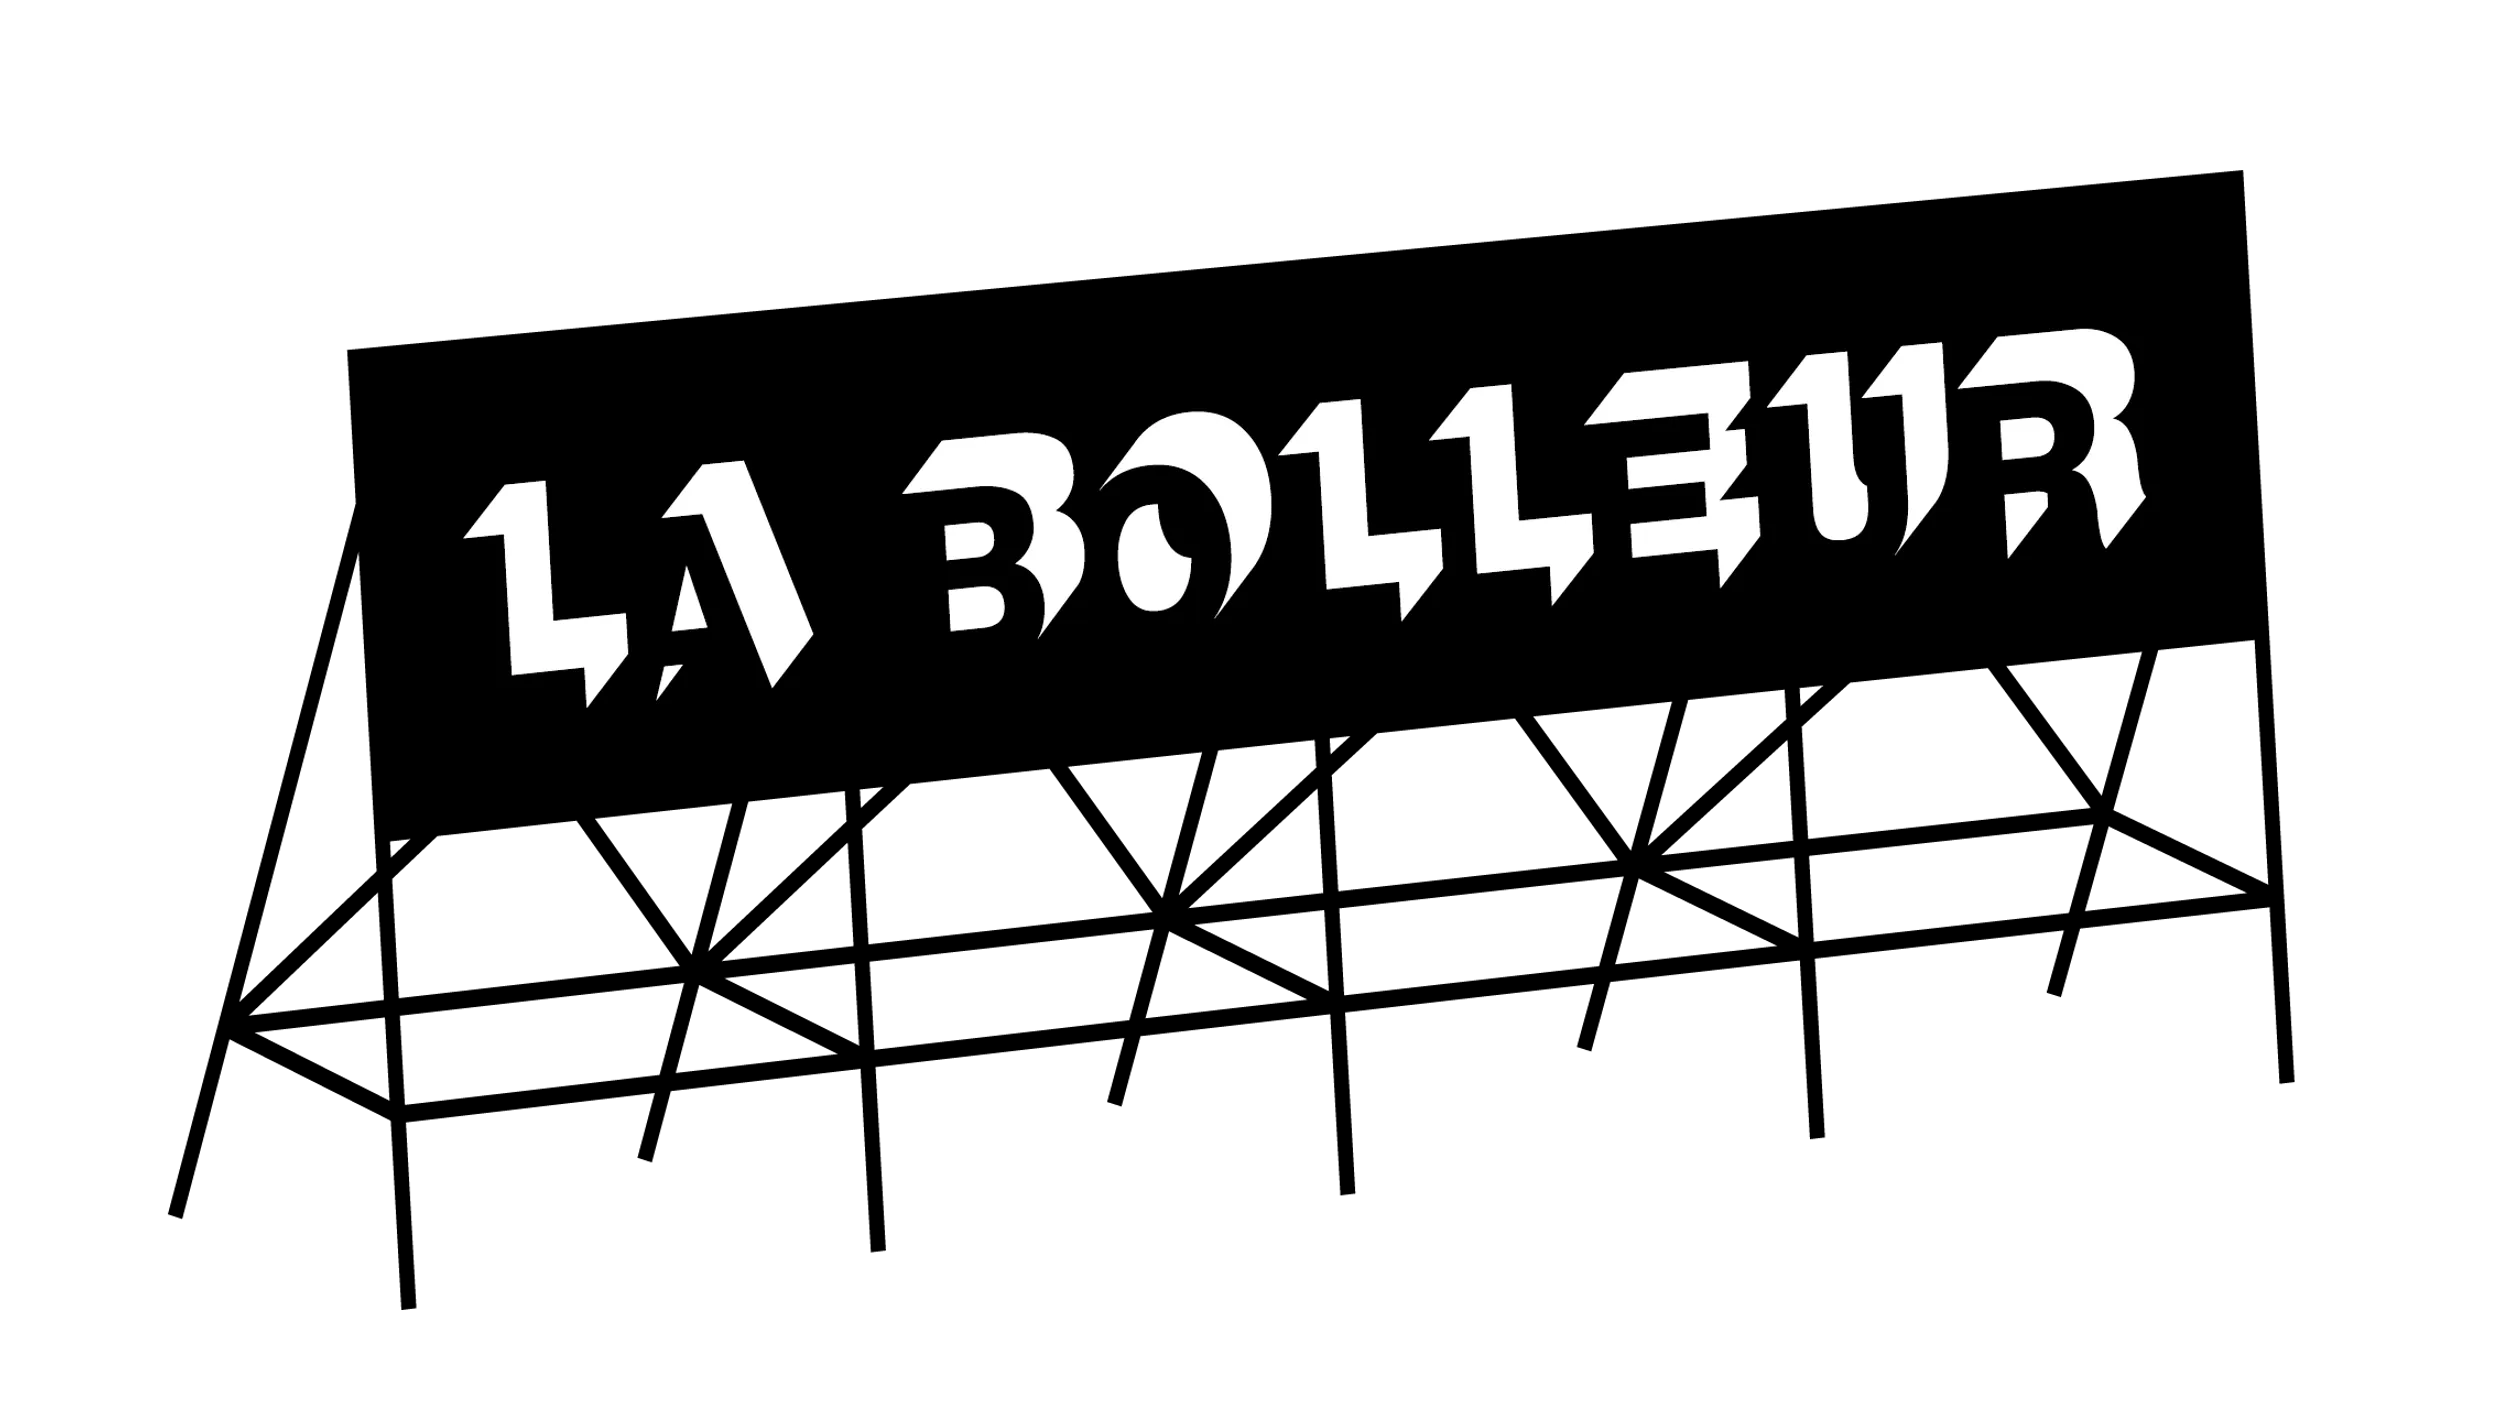 Logo La Bolleur